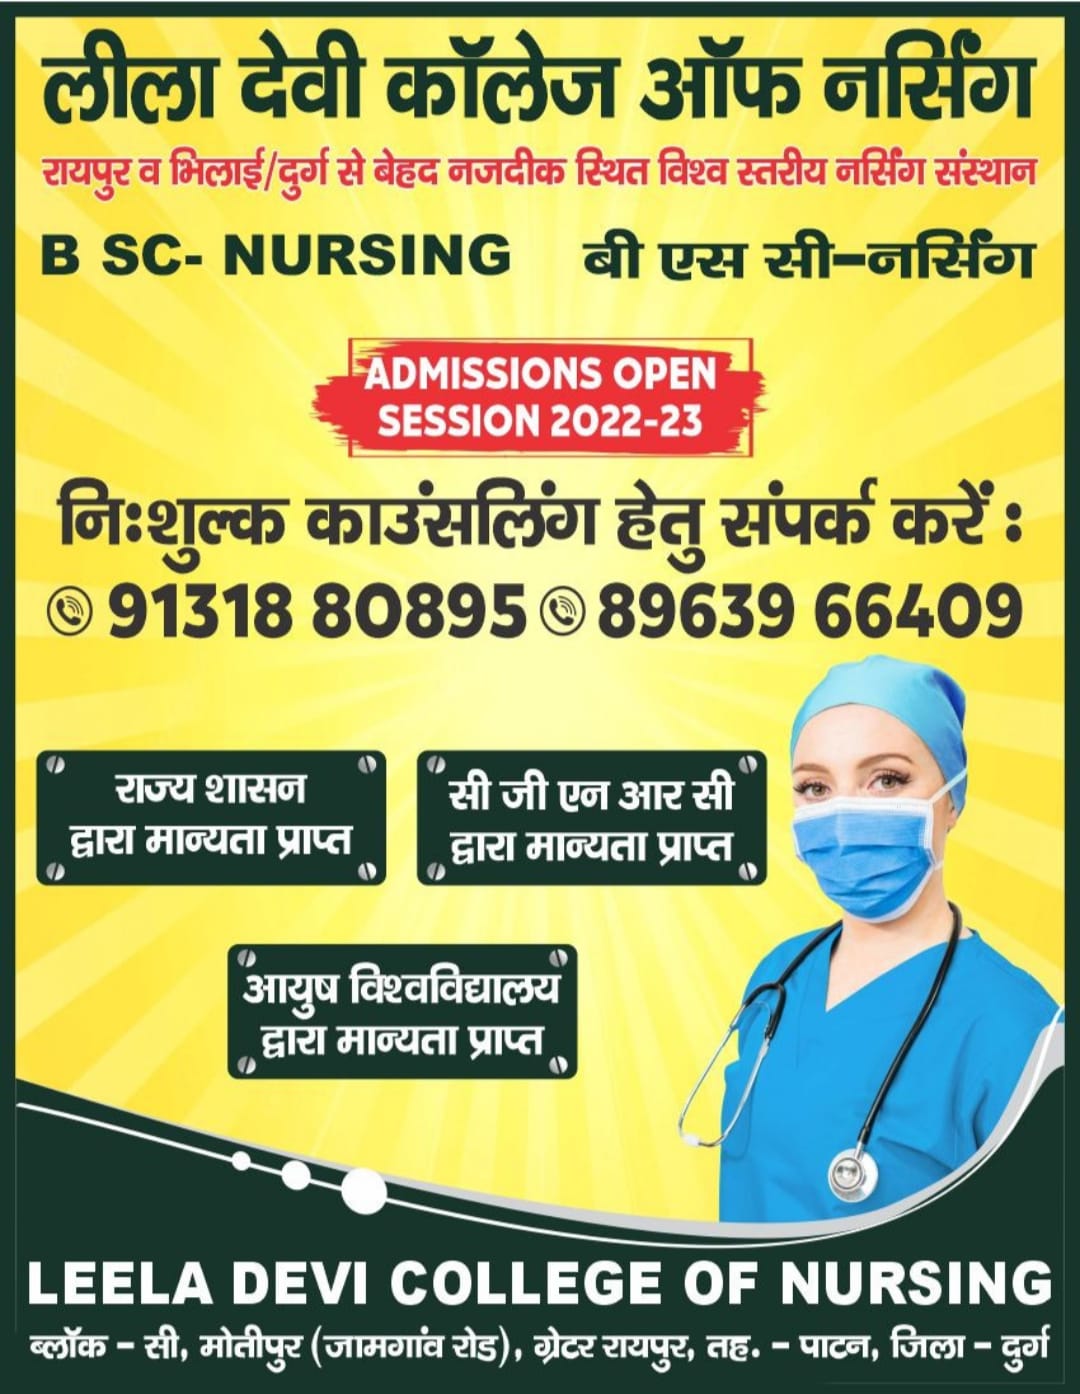 Leela Devi College of Nursing Admission Open for Session 2022-2023